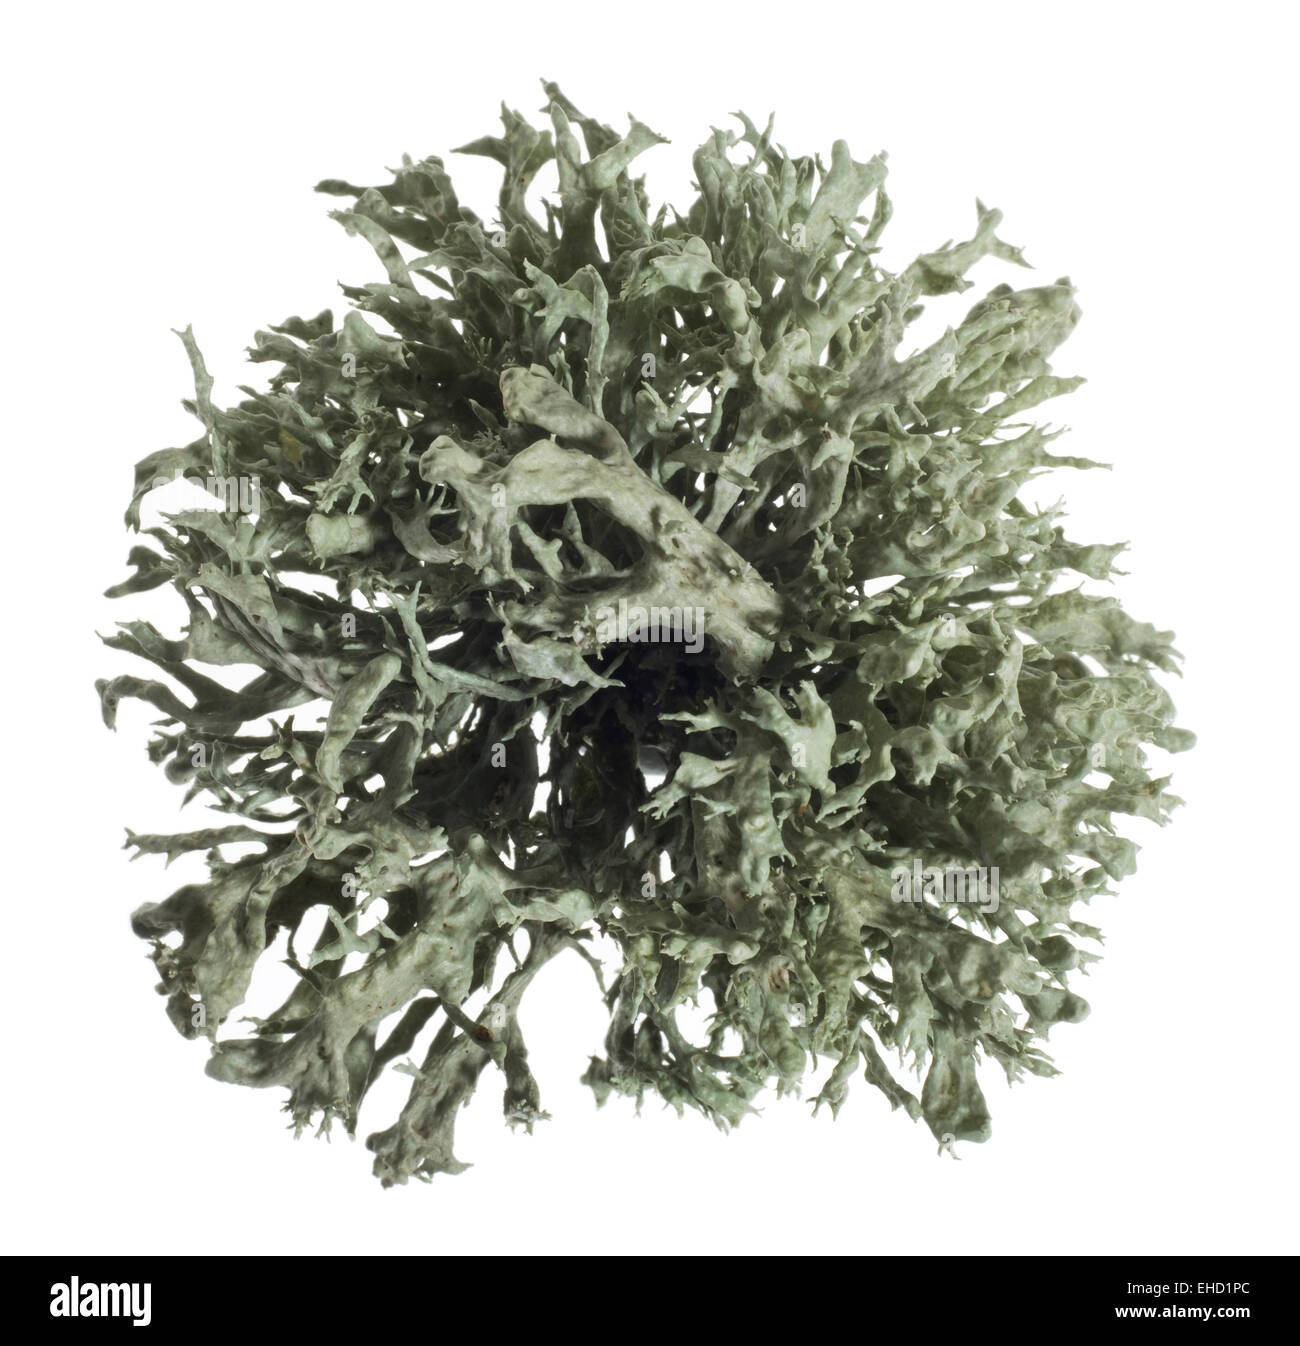 Fruticose lichen. Stock Photo